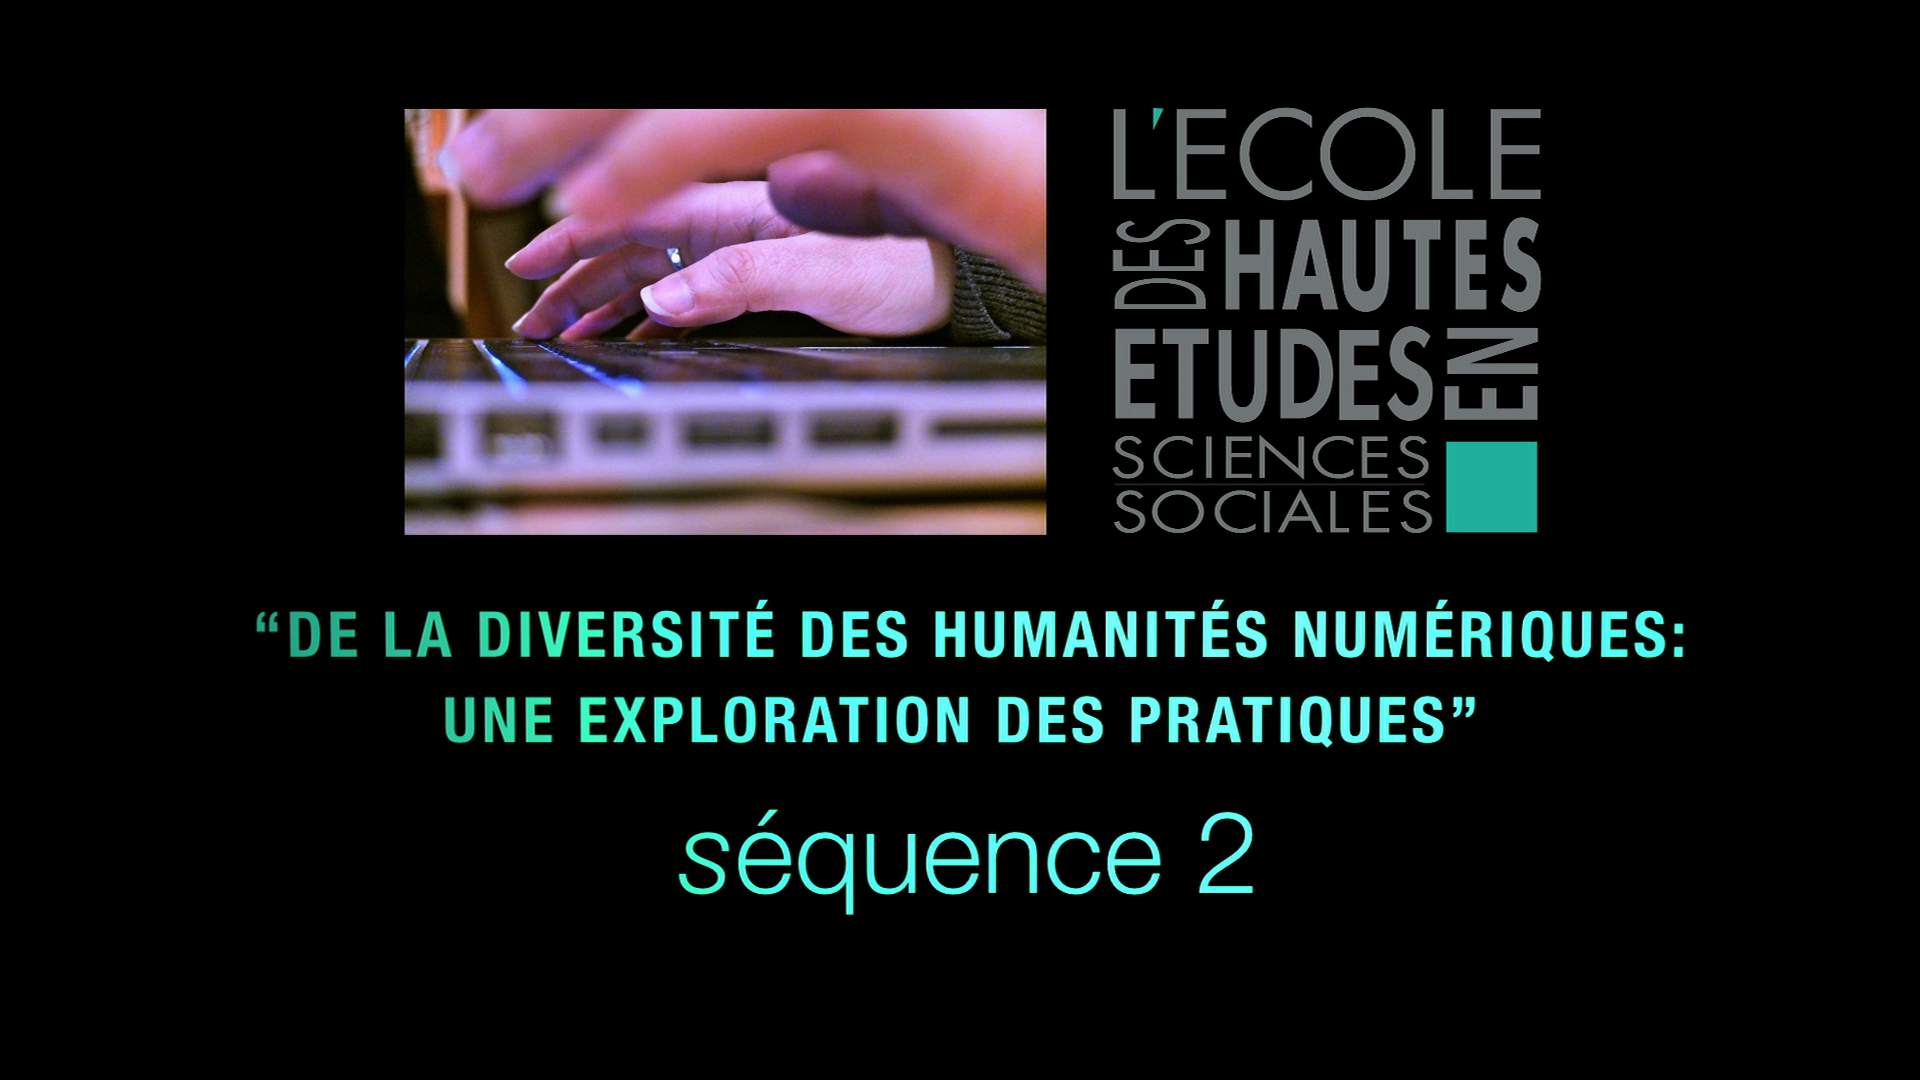 2 - De la diversité des humanités numériques: une exploration des pratiques